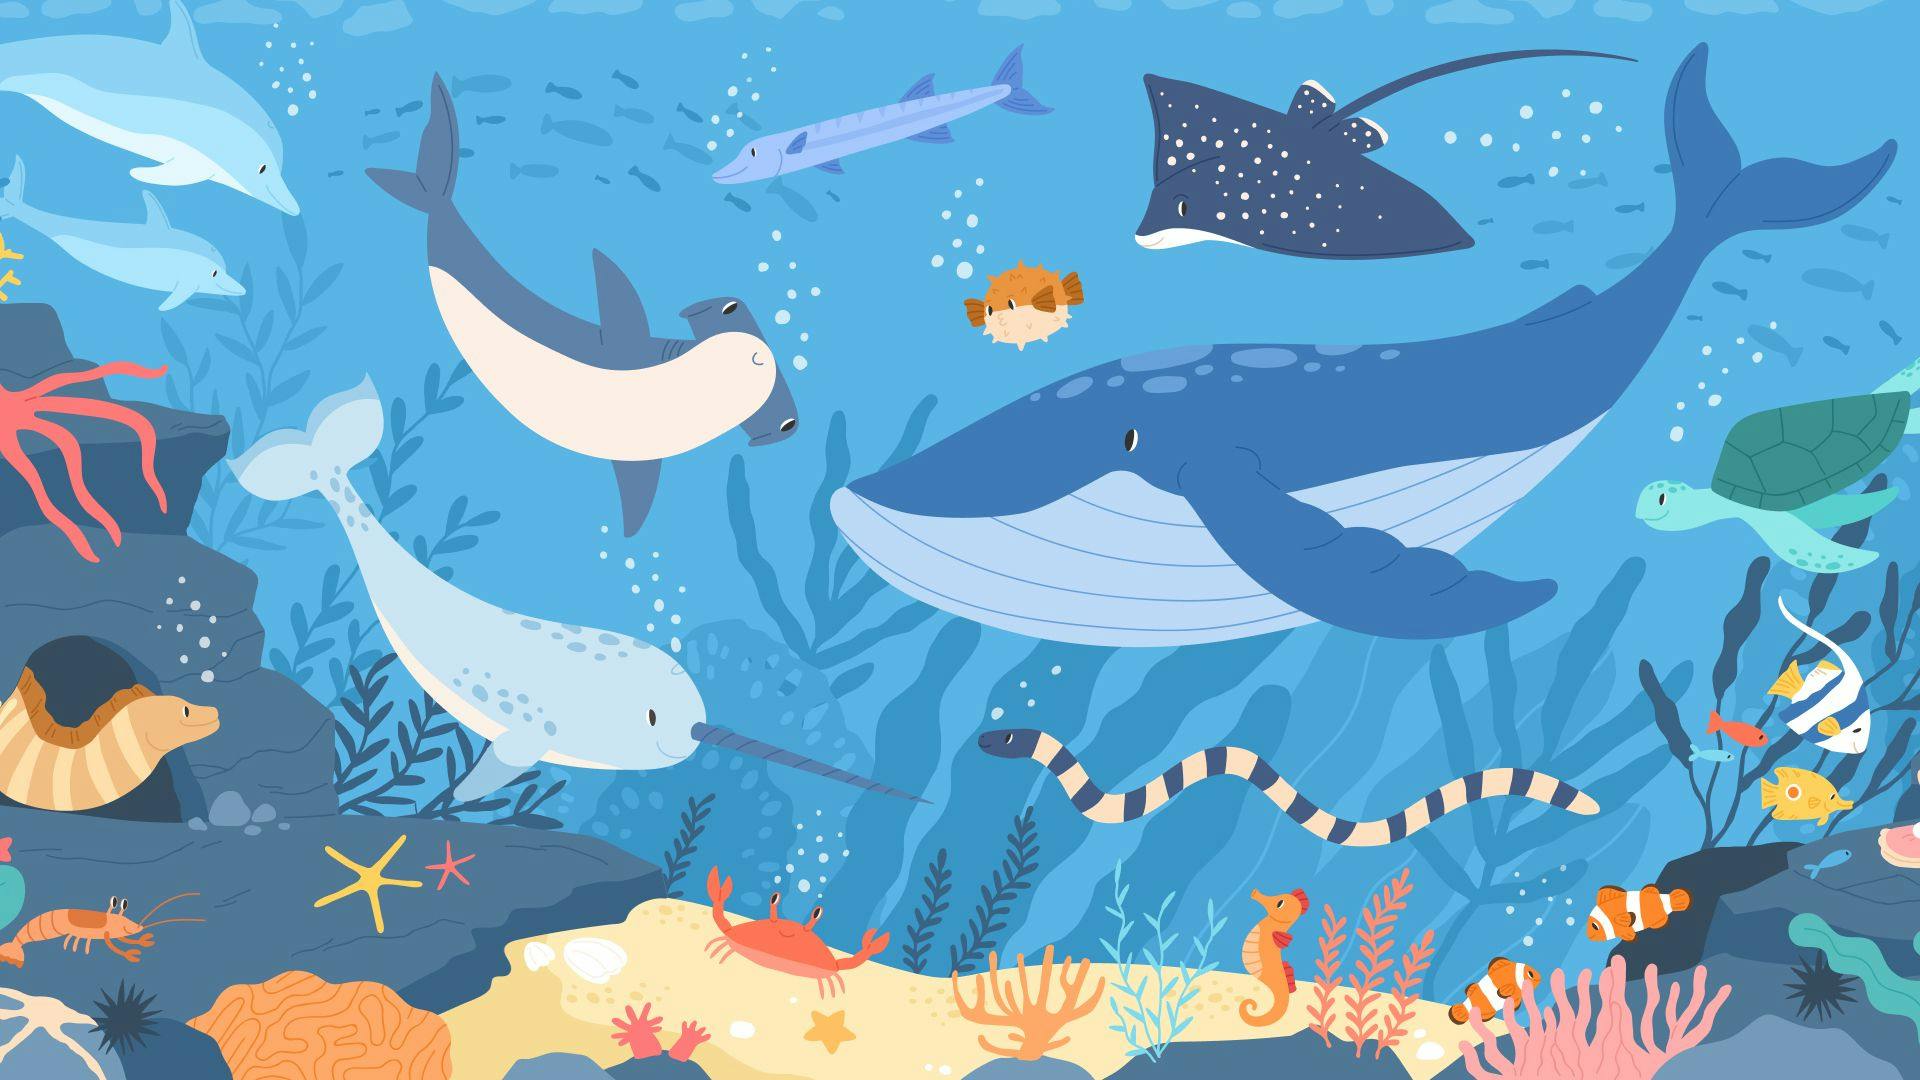 Ocean creatures- narwhal, whale, shark, blowfish, eels